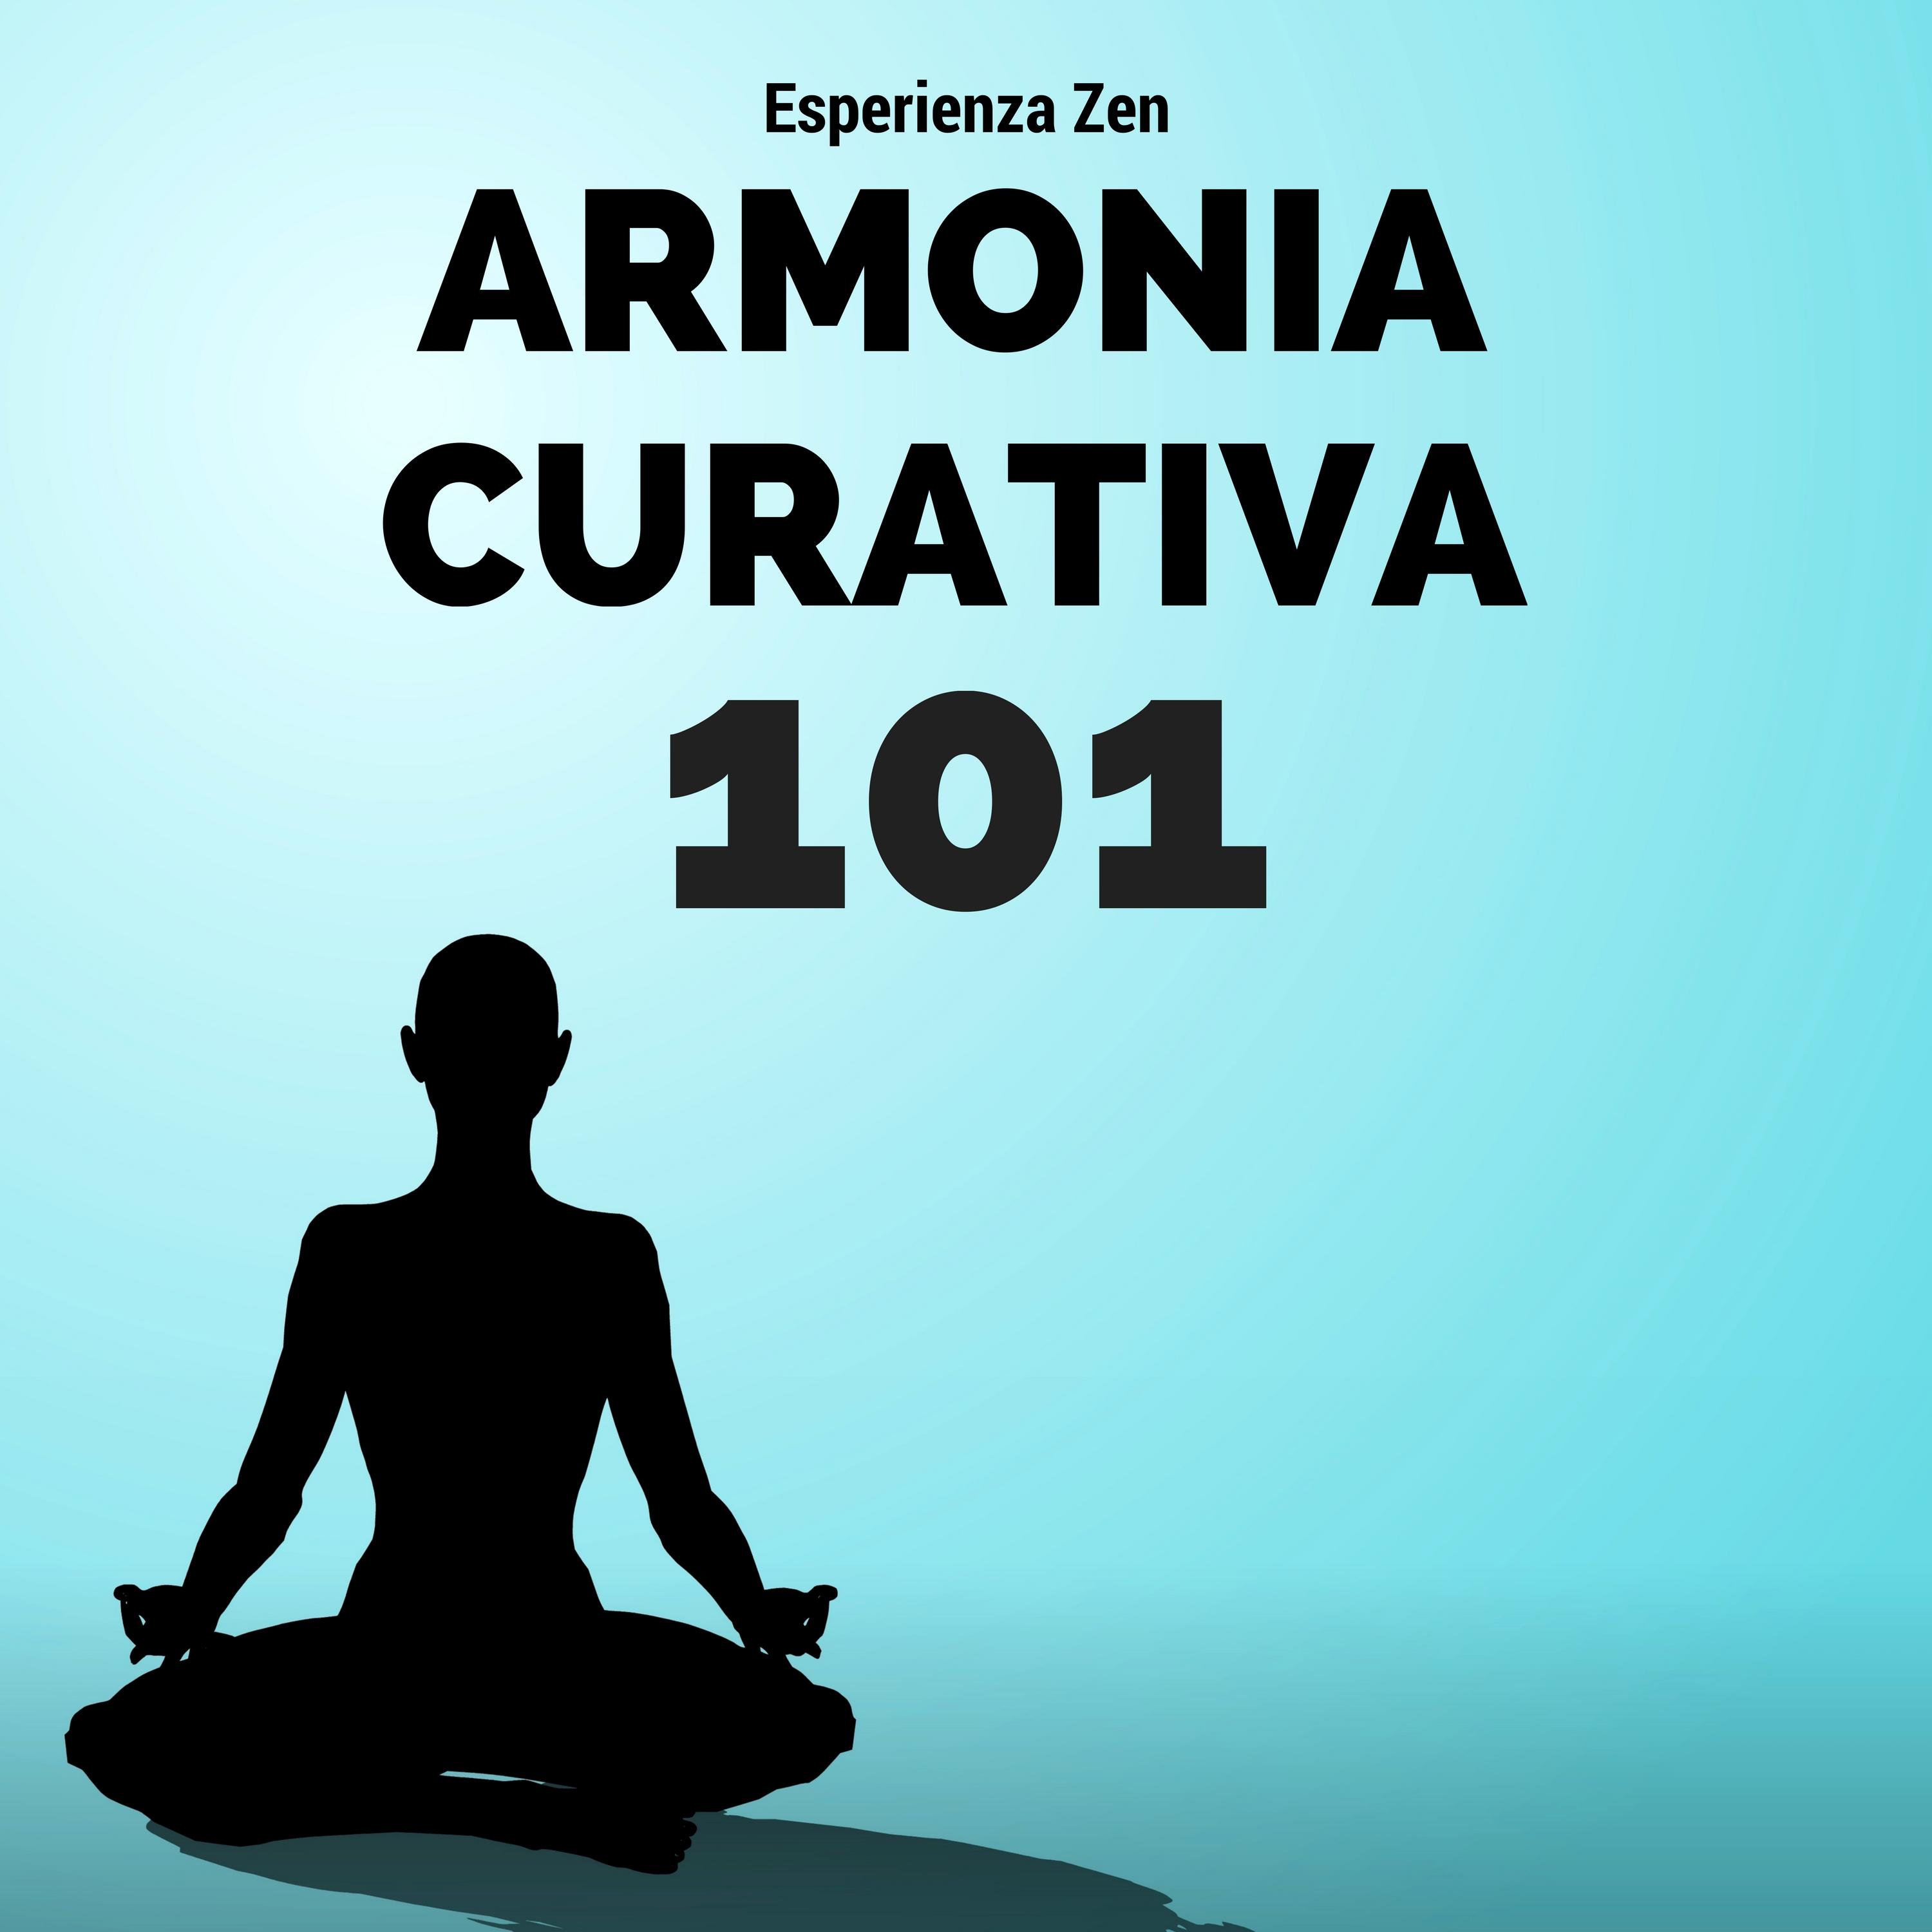 Armonia Curativa 101: Esperienza Zen per Centro Benessere e Massaggi, Pilates, Onde Oceaniche, Suoni di Acqua, Collezione Estate 2017